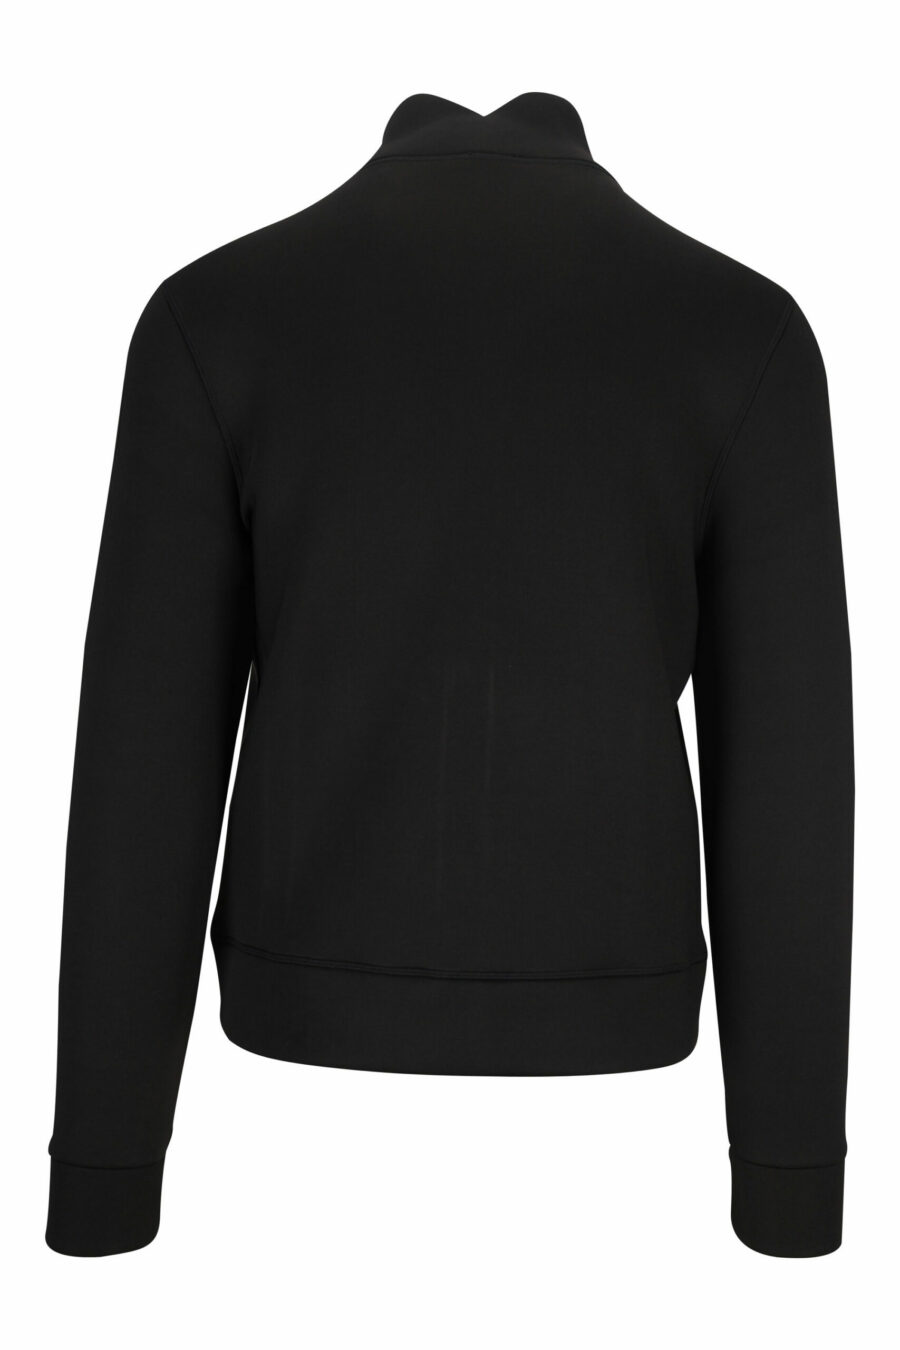 Schwarzes Sweatshirt mit Reißverschluss und einfarbigem Logoaufnäher - 8058610660024 2 skaliert